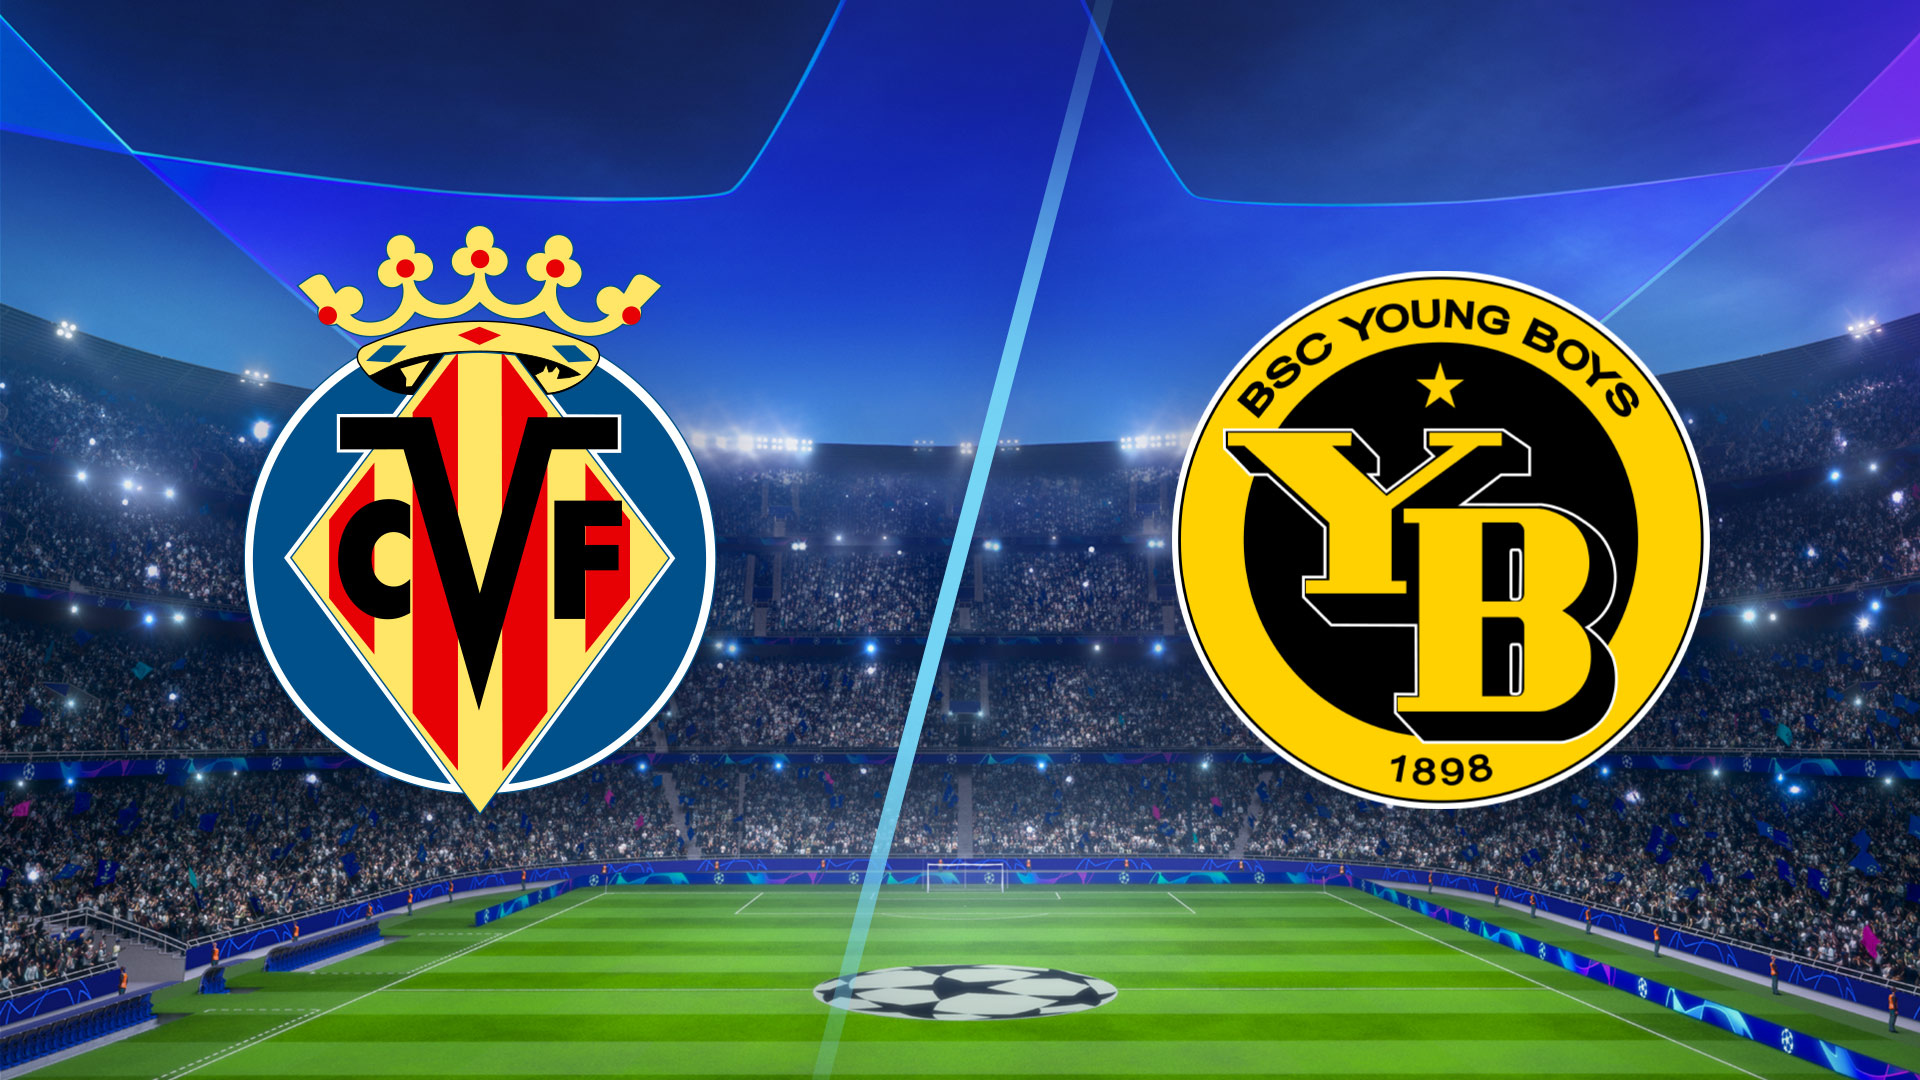 Villarreal vs Young Boys Highlights 02 November 2021